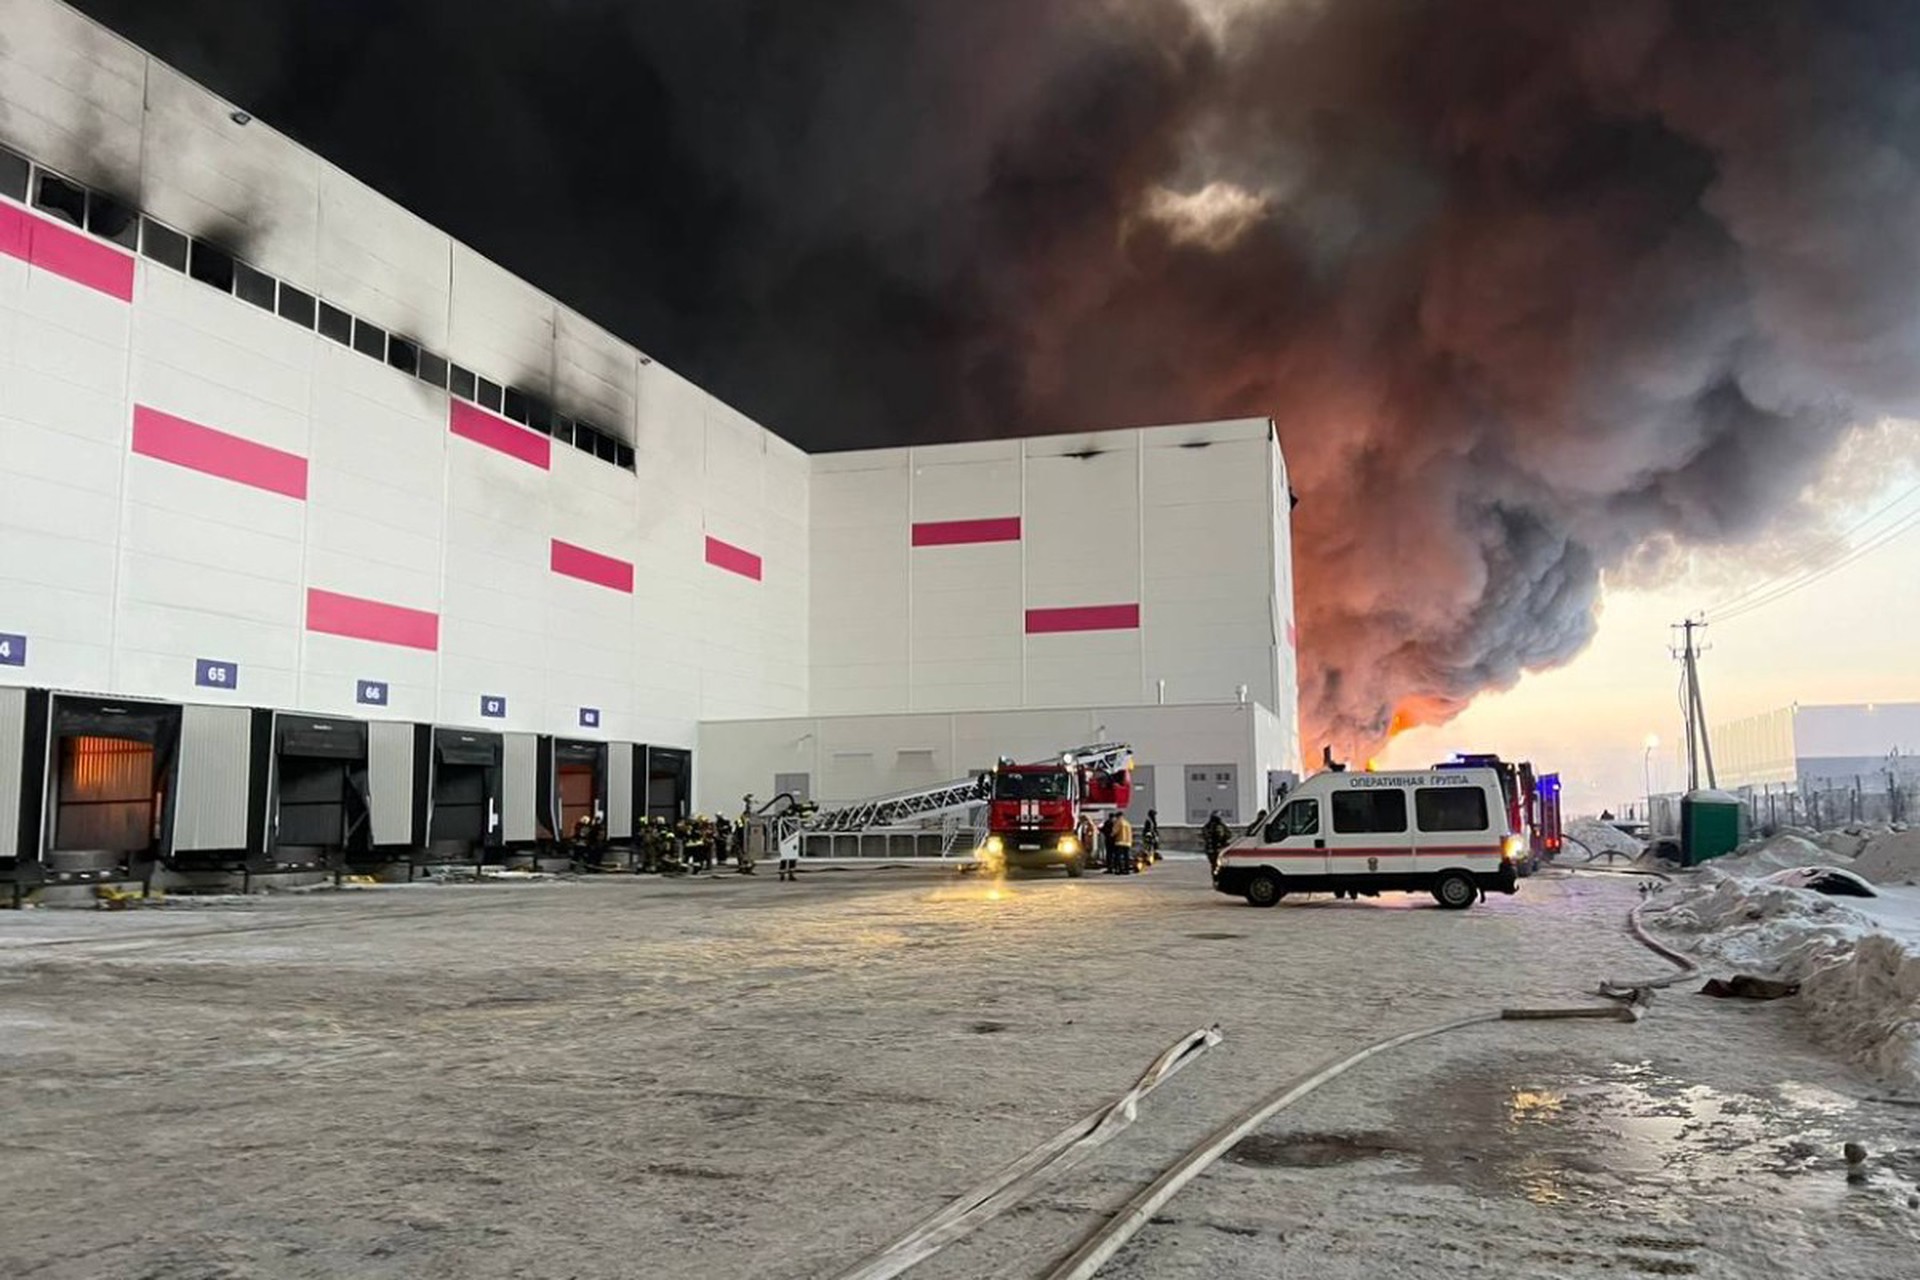 Прокуратура проводит проверку из-за пожара на складе в Санкт-Петербурге